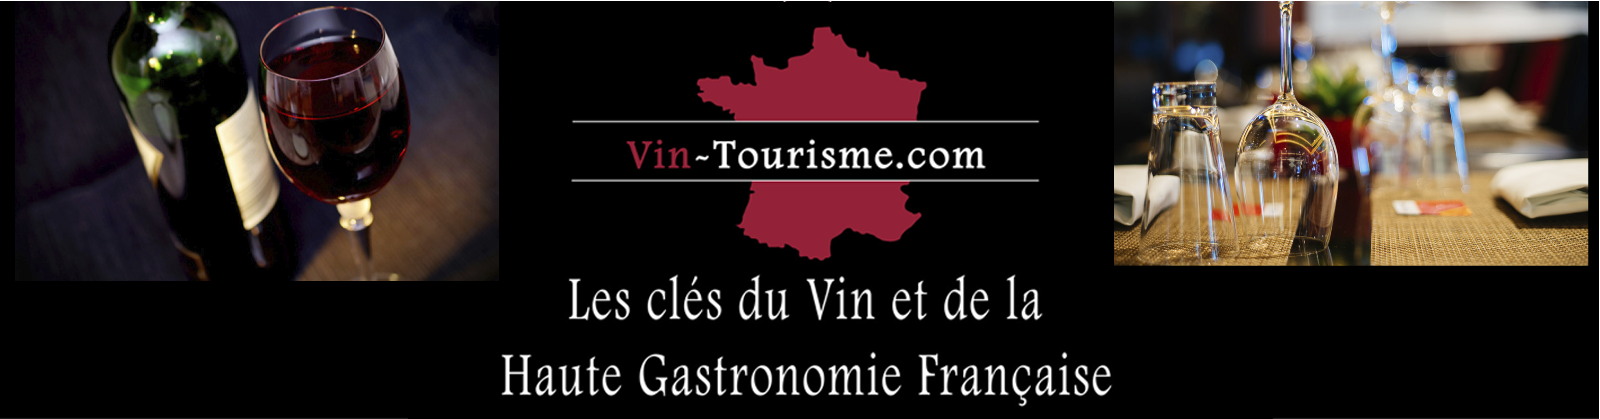 VIN-TourismeHome